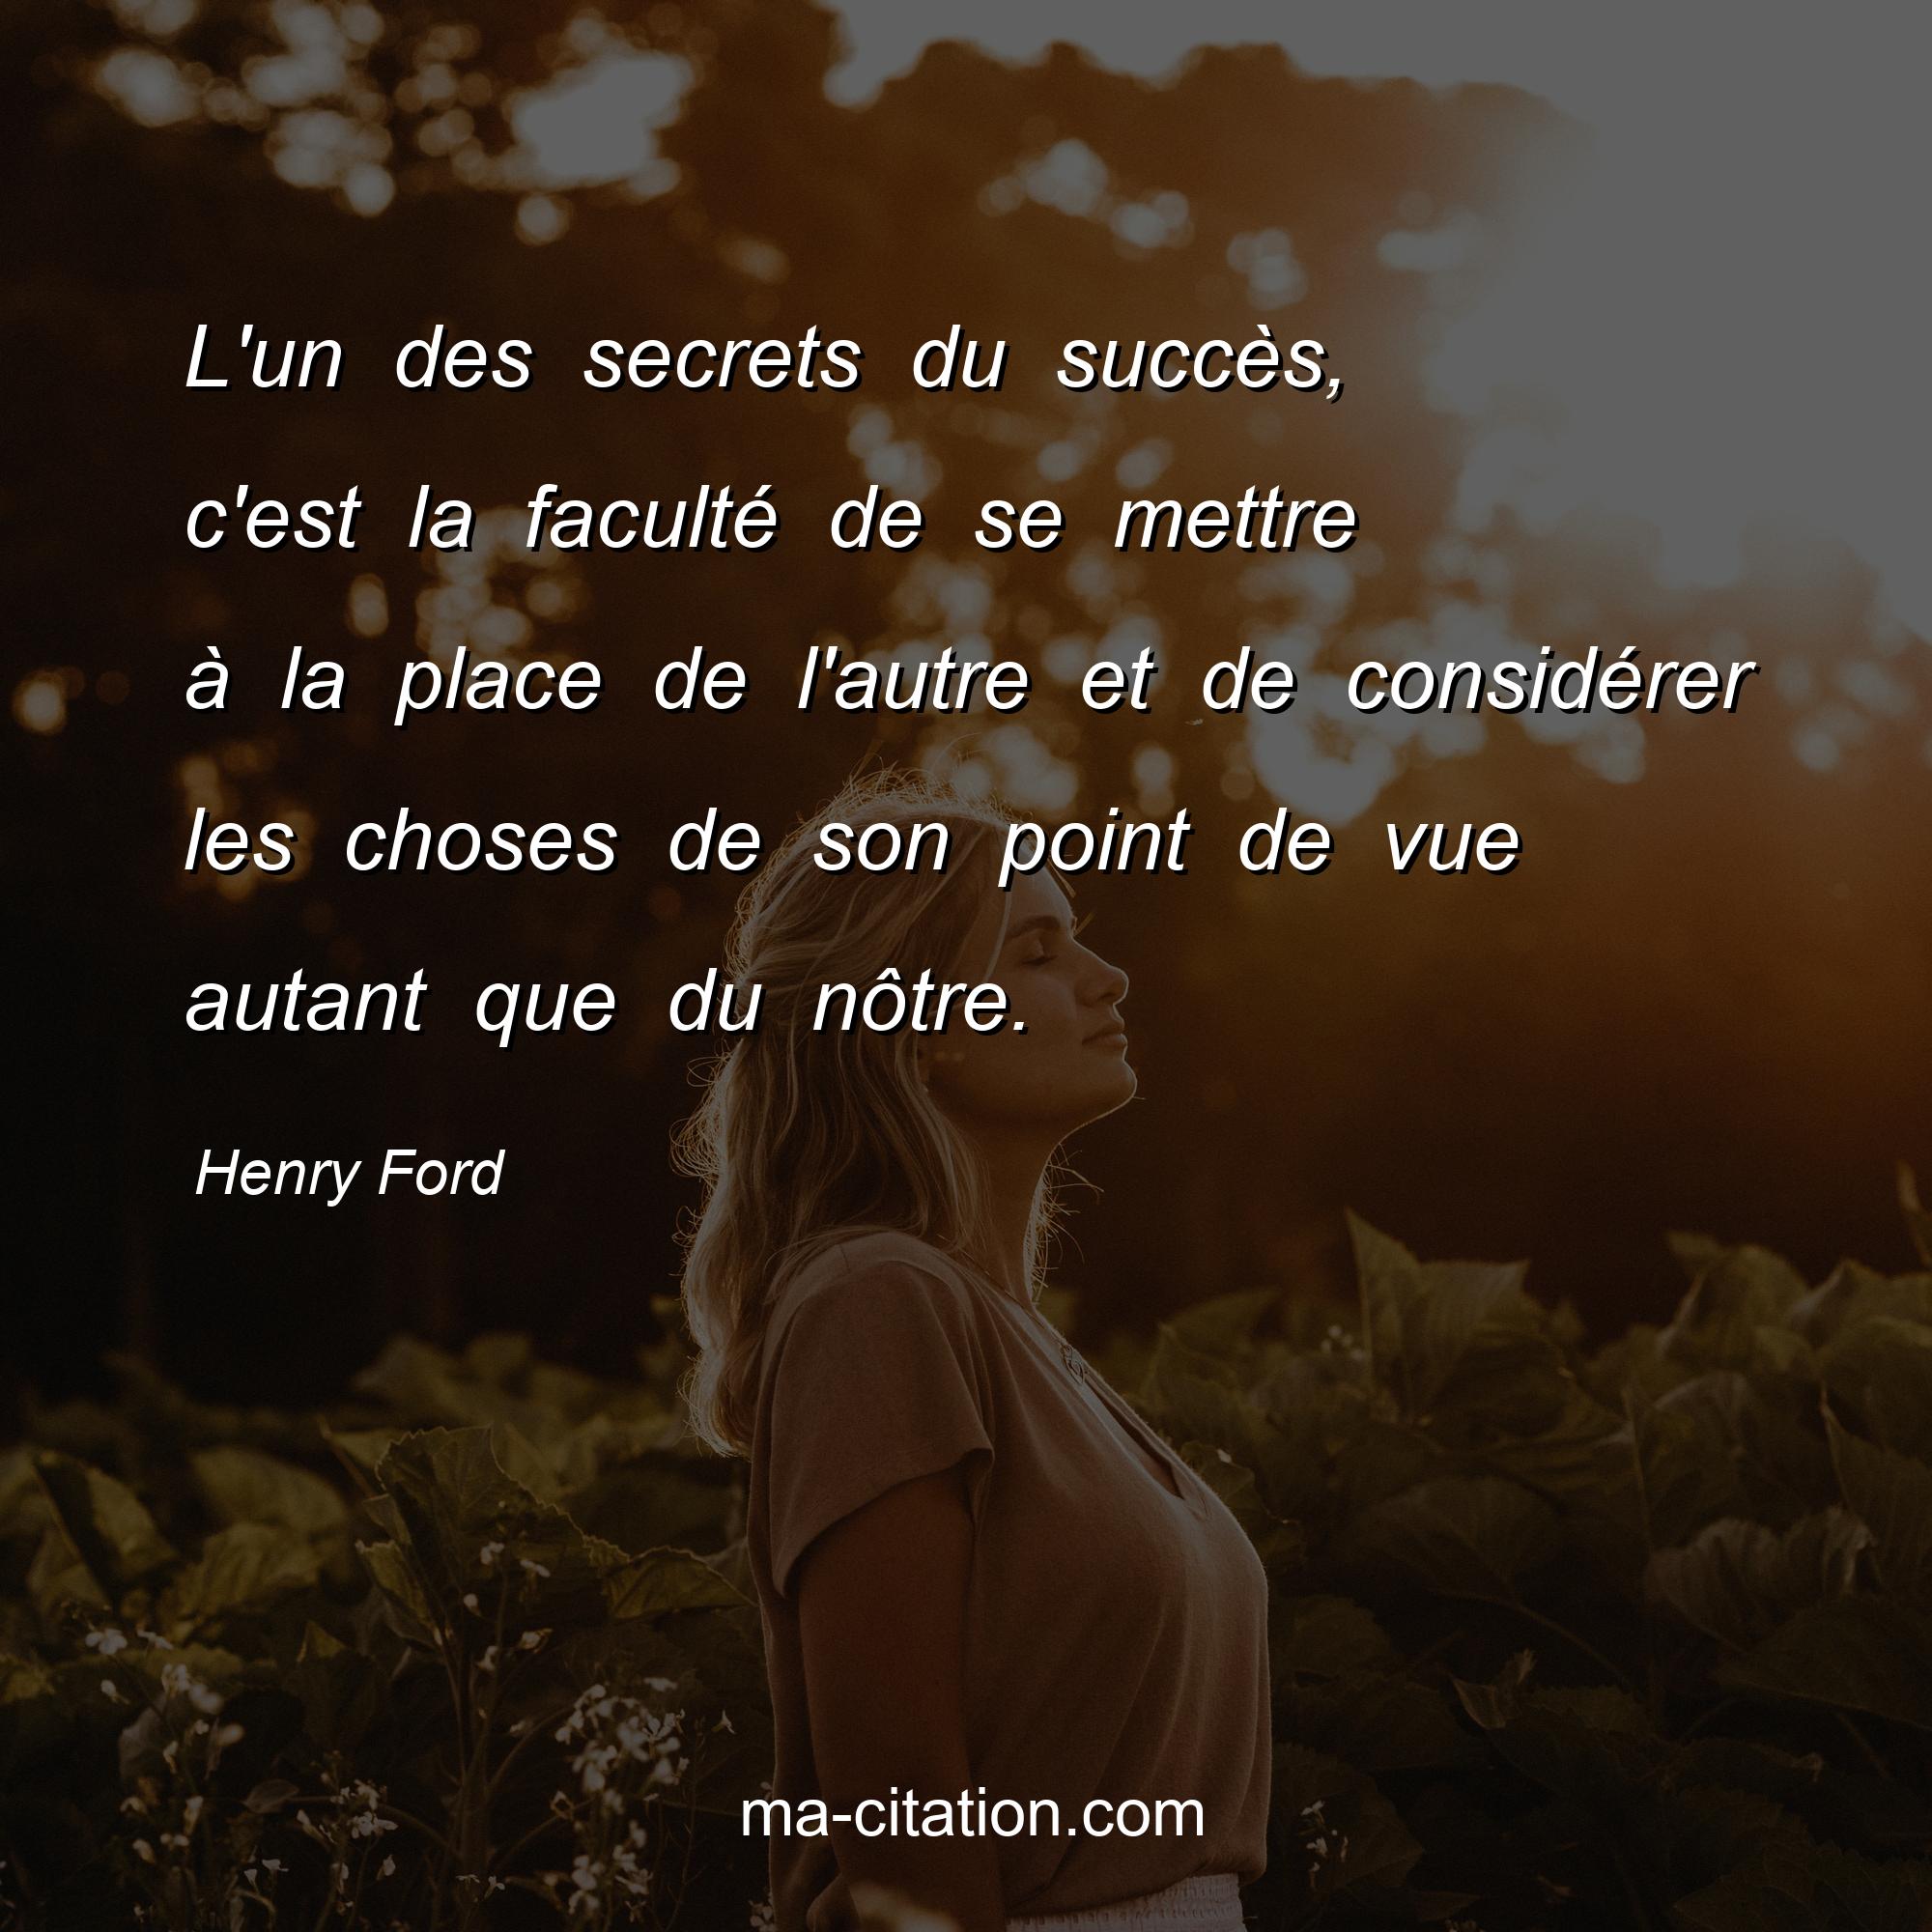 Henry Ford : L'un des secrets du succès, c'est la faculté de se mettre à la place de l'autre et de considérer les choses de son point de vue autant que du nôtre.